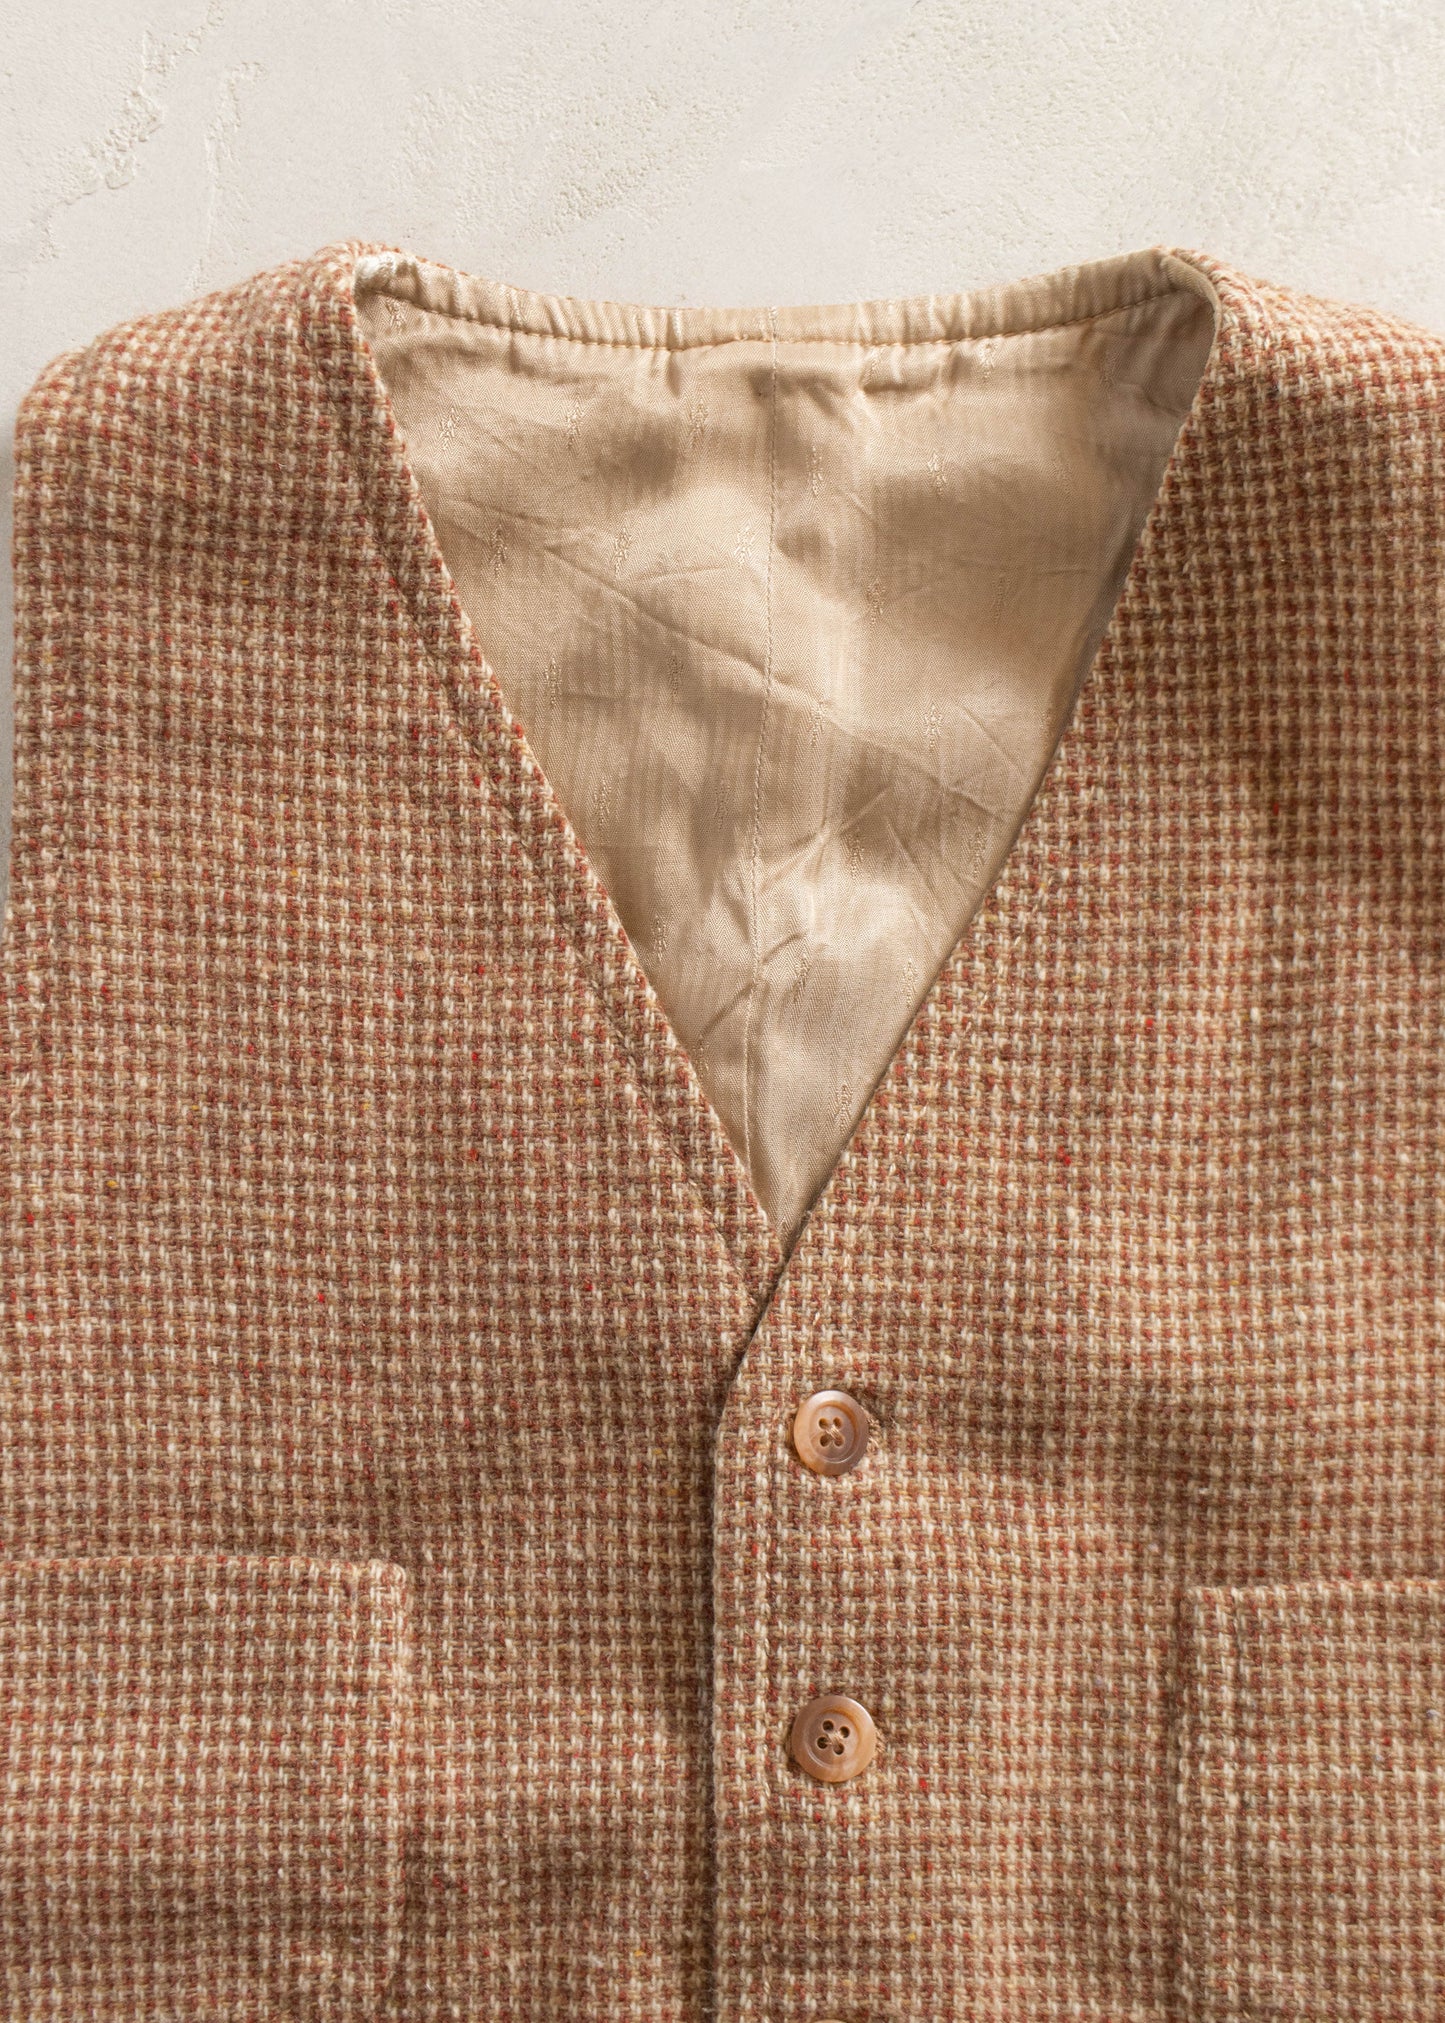 1970s Wool Suit Vest Size S/M